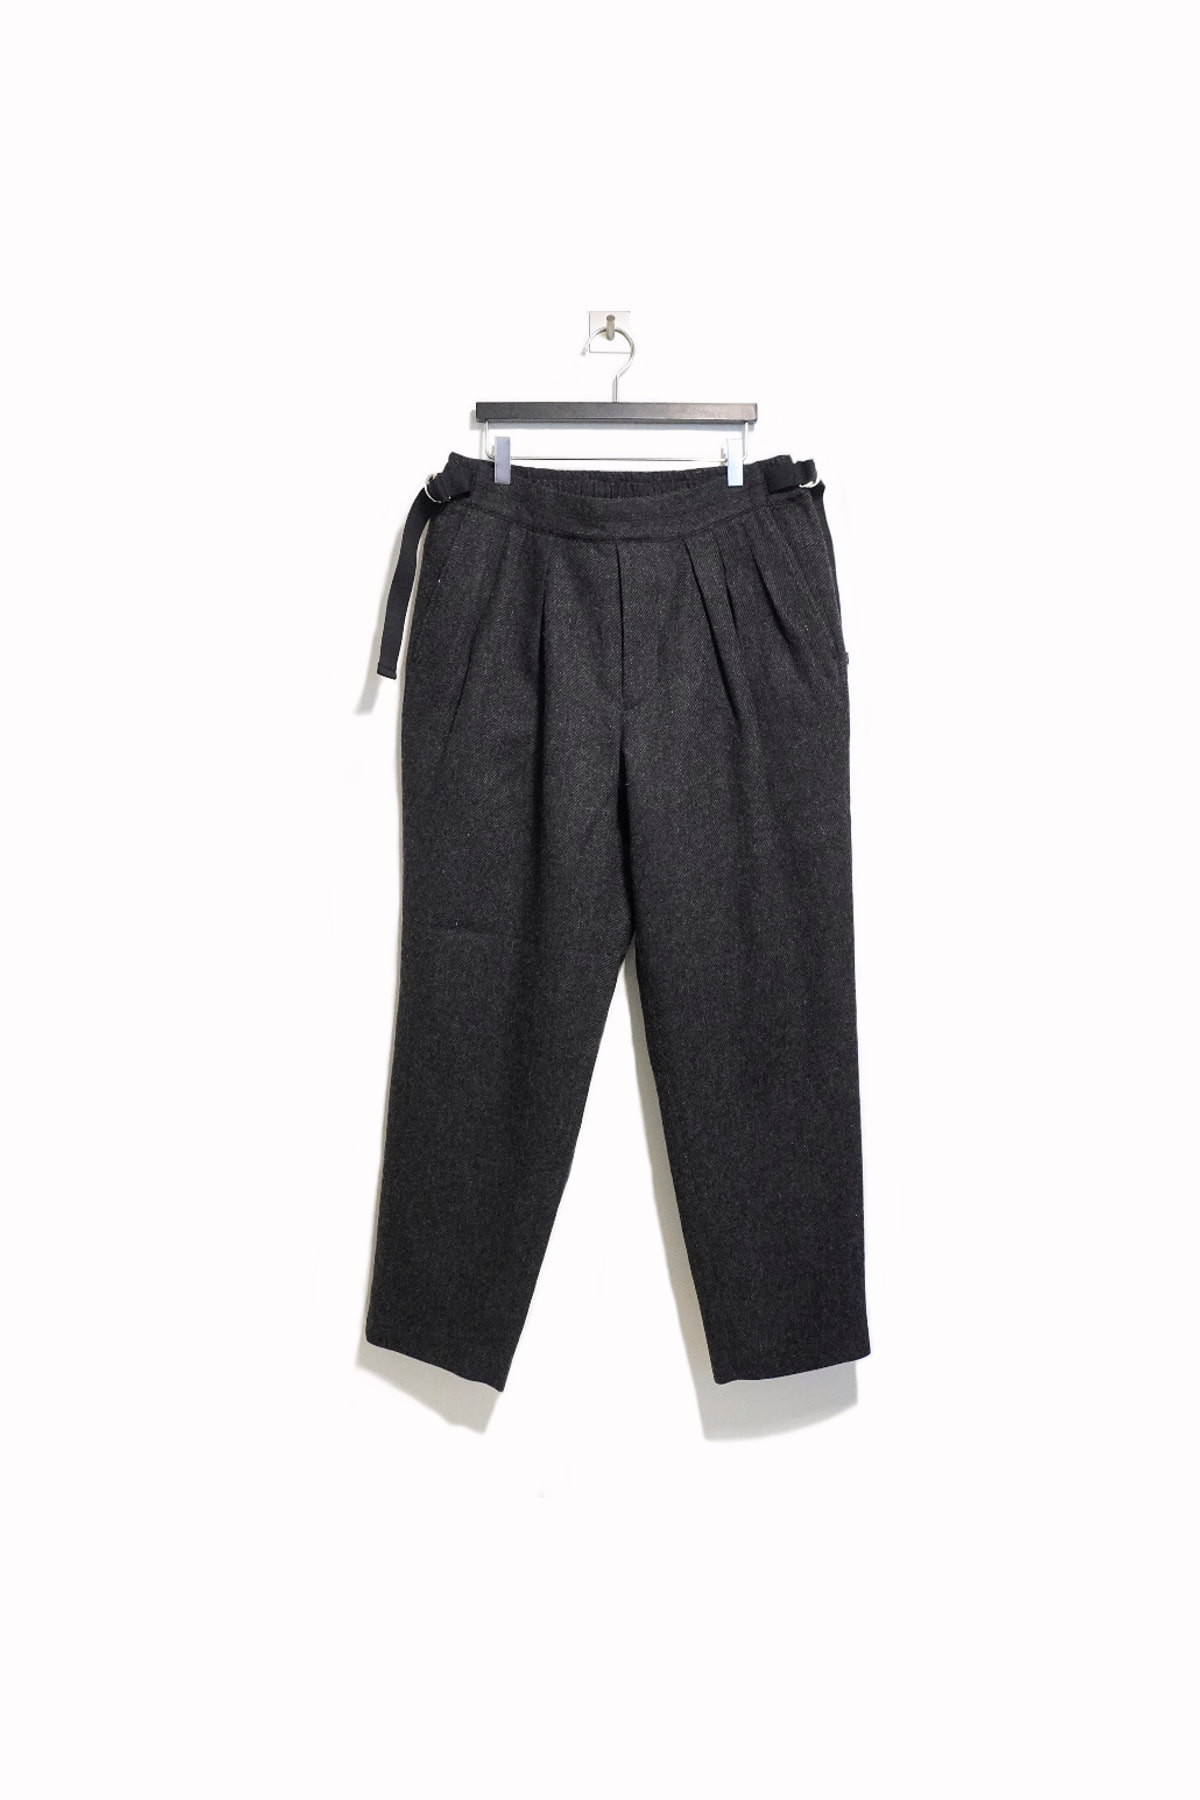 [SAYATOMO] Hakama Tweed Pants – Charcoal